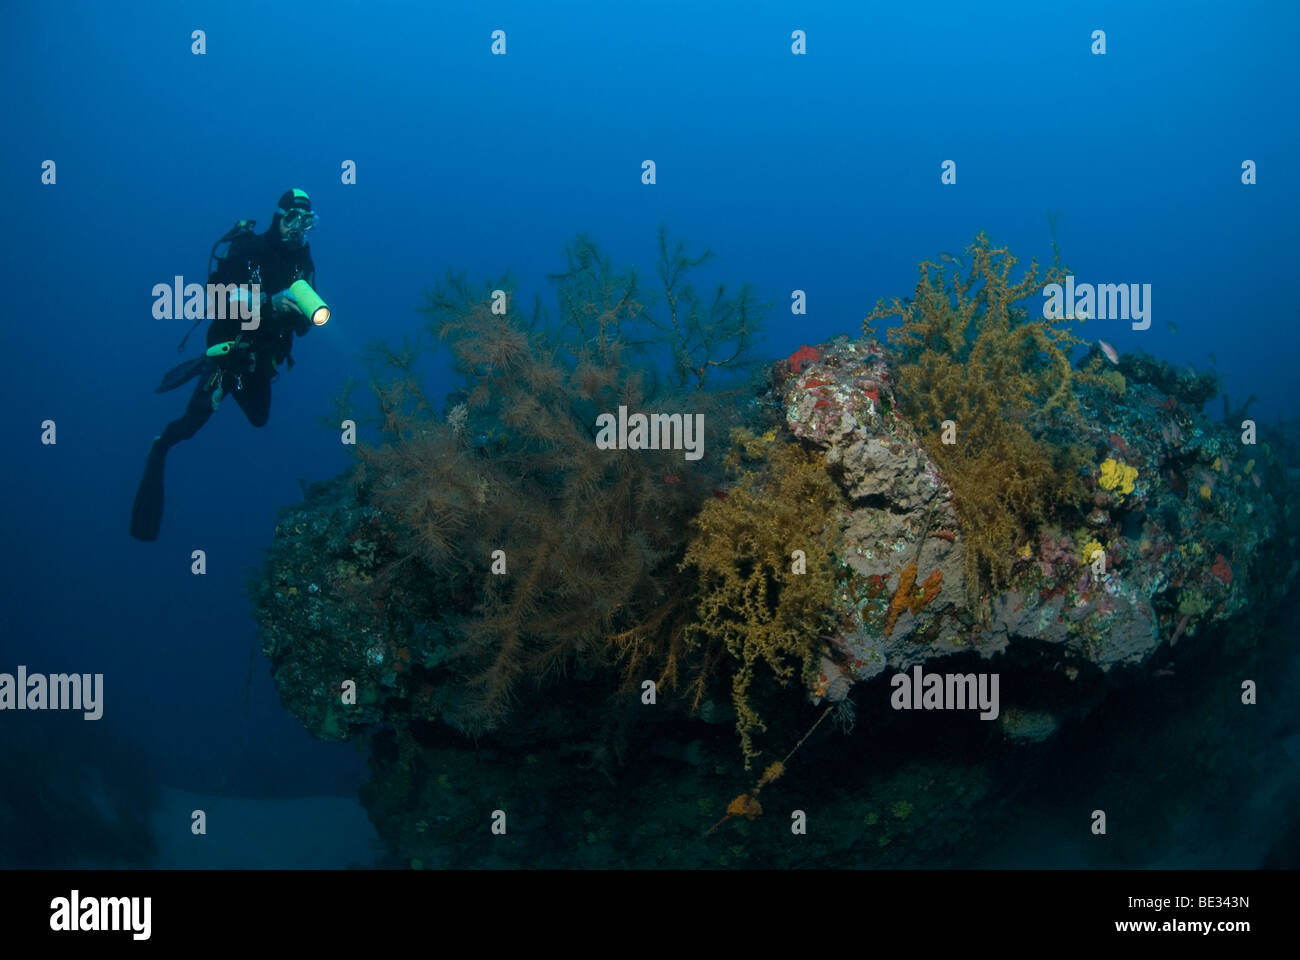 Diver and Black Corals, Antipathidae, Lanzarote, Canary Islands, Atlantic Ocean, Spain Stock Photo